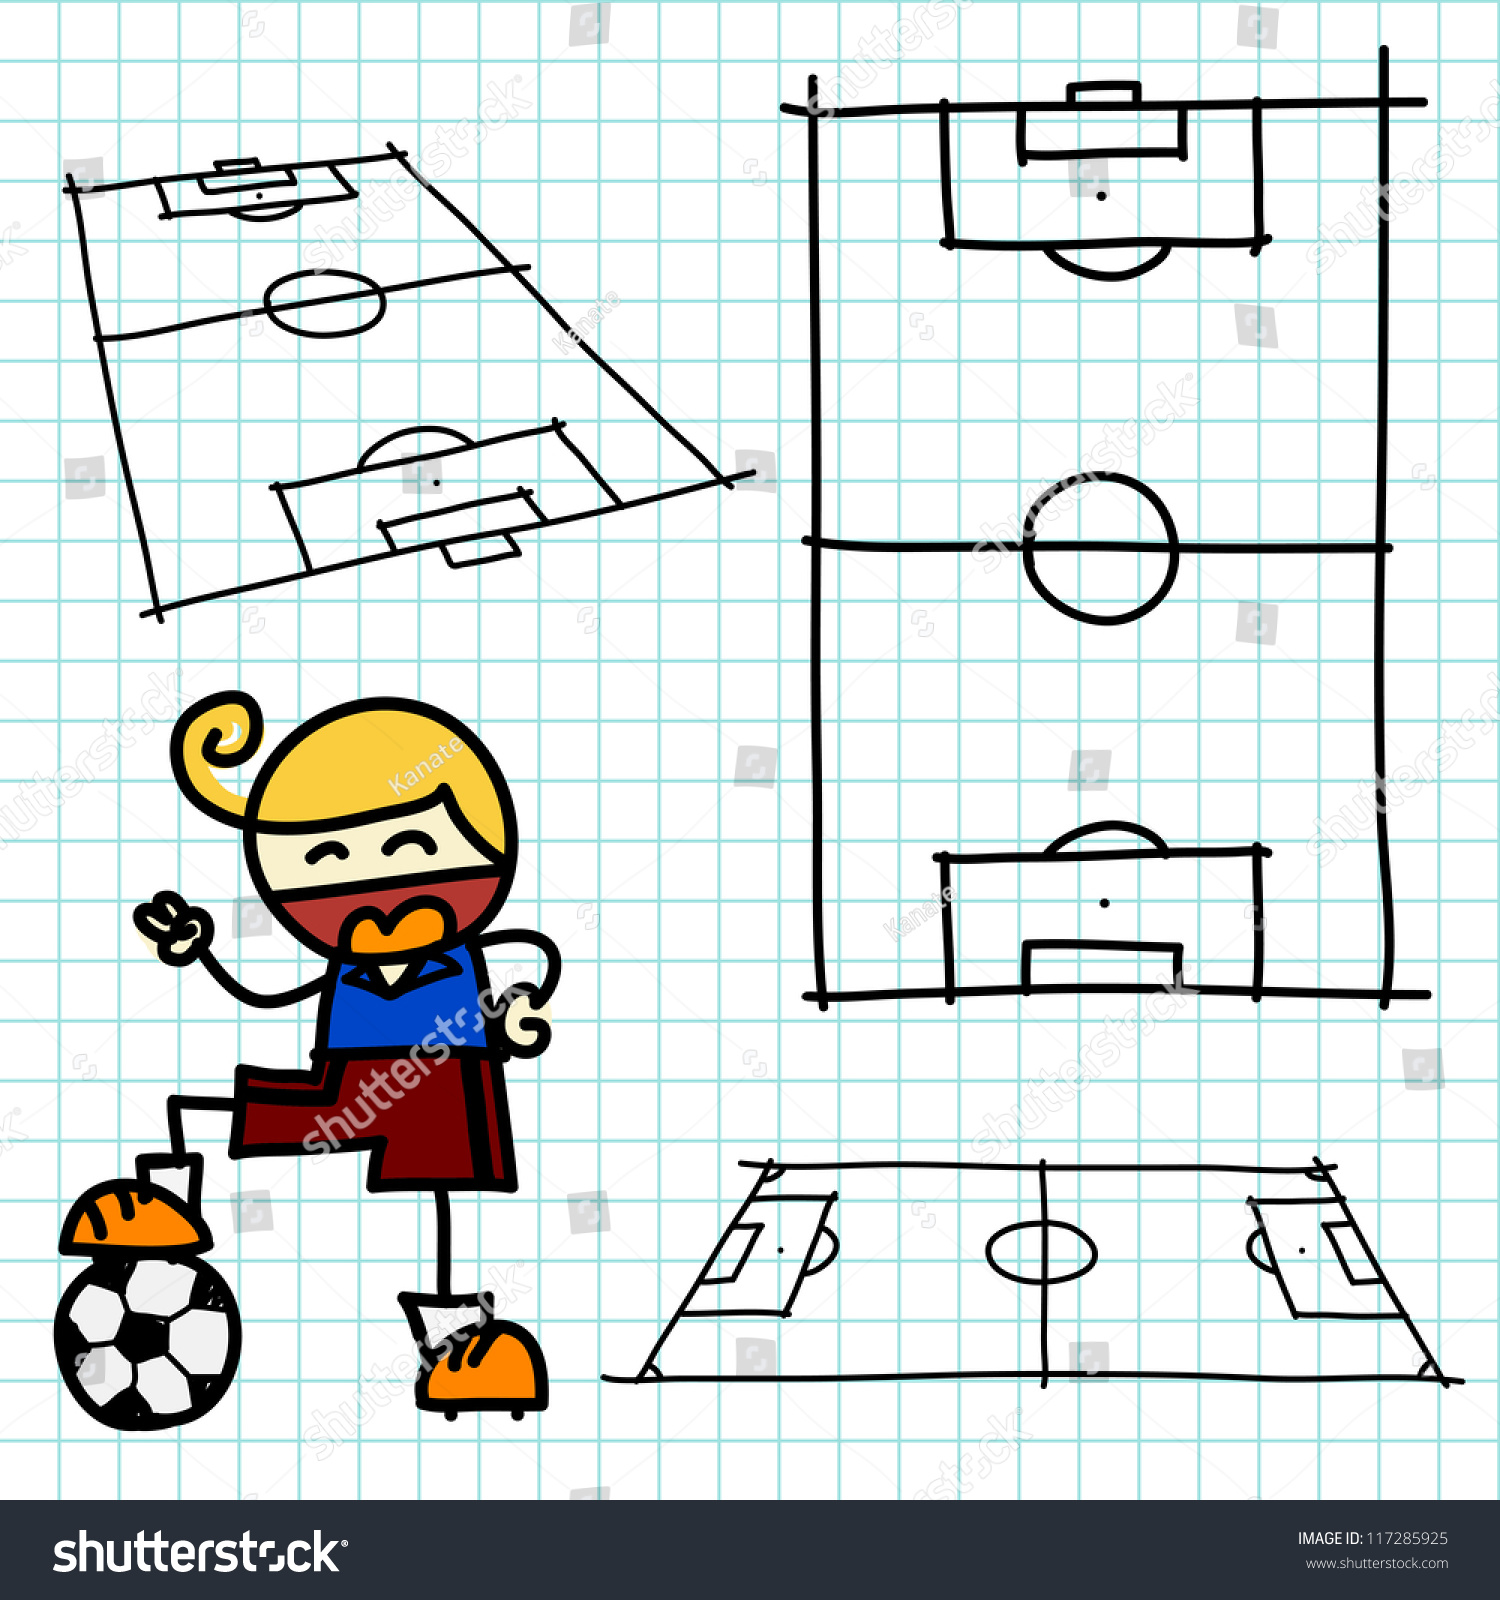 Как нарисовать ребенку футбольное поле